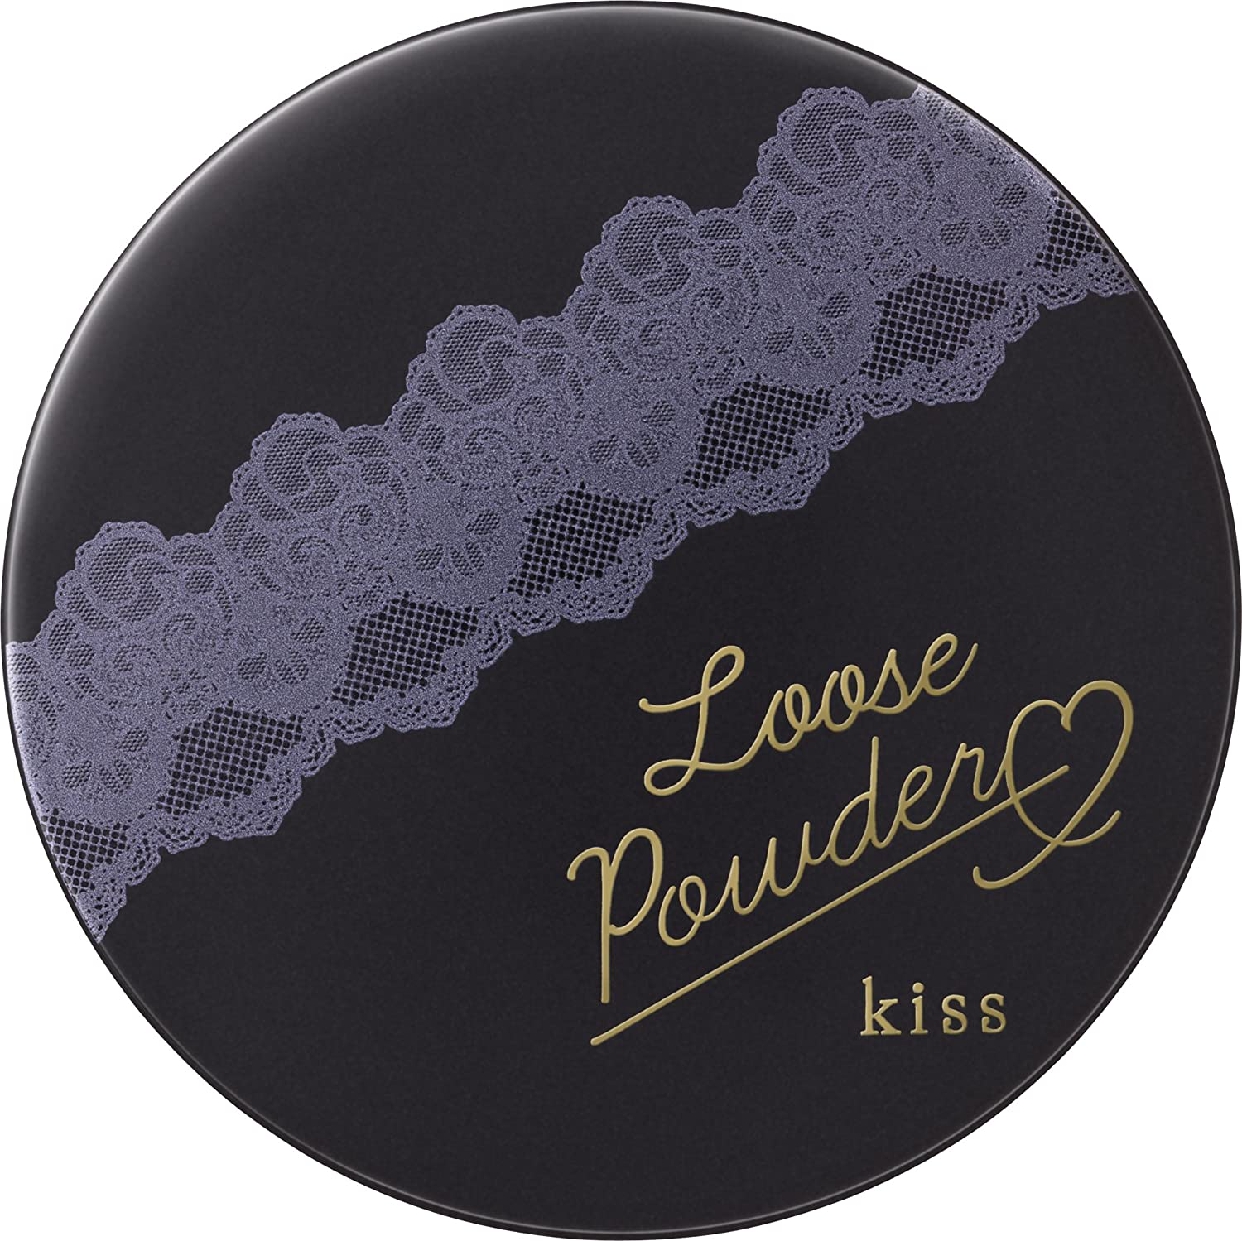 kiss(キス) ルースパウダー ルーセントの商品画像2 